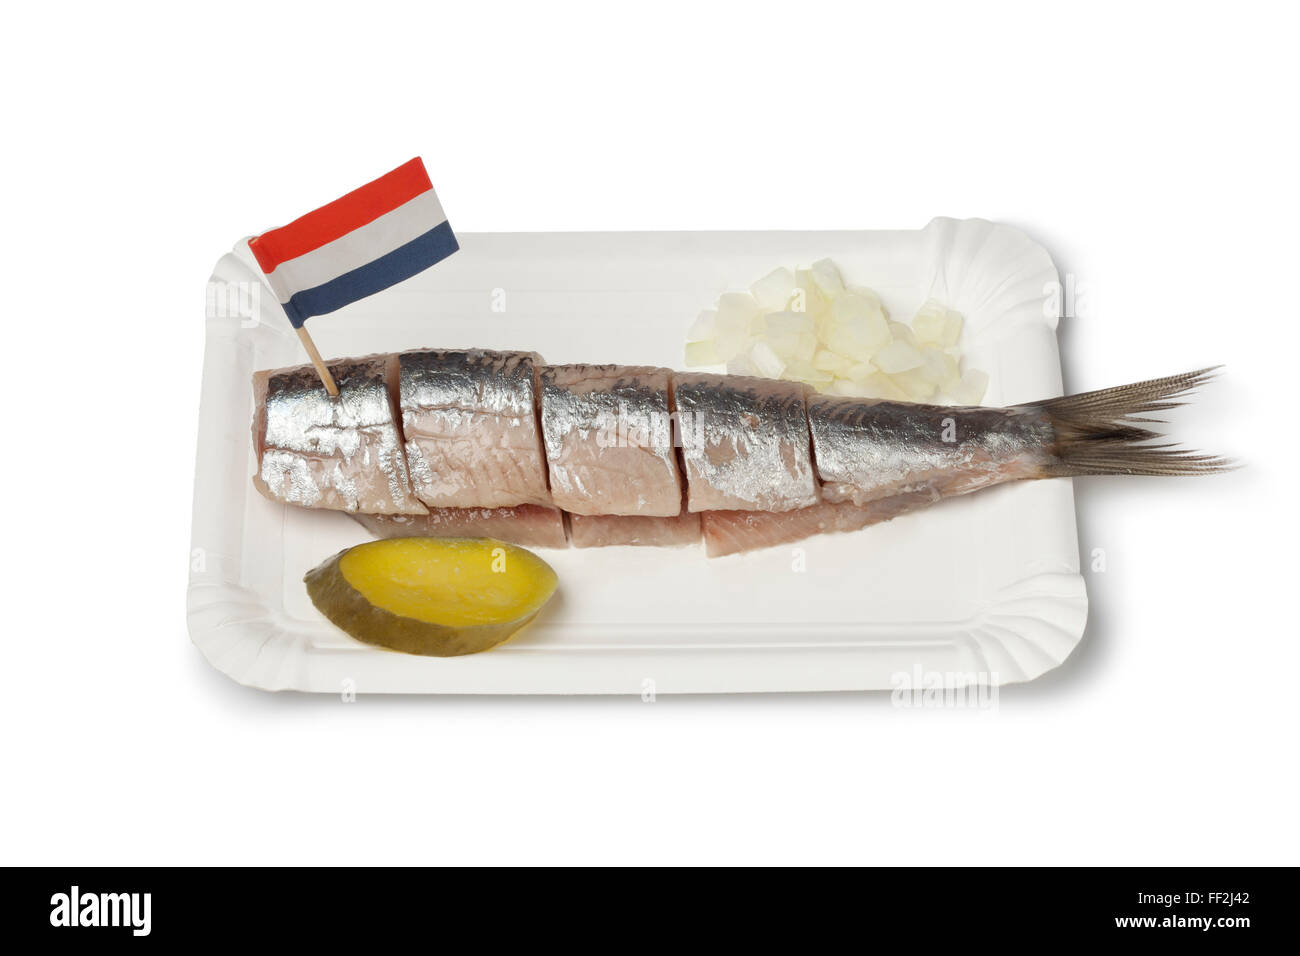 Le hareng frais traditionnels oignons avec la manière qu'il est mangé à Amsterdam, Pays-Bas sur fond blanc Banque D'Images